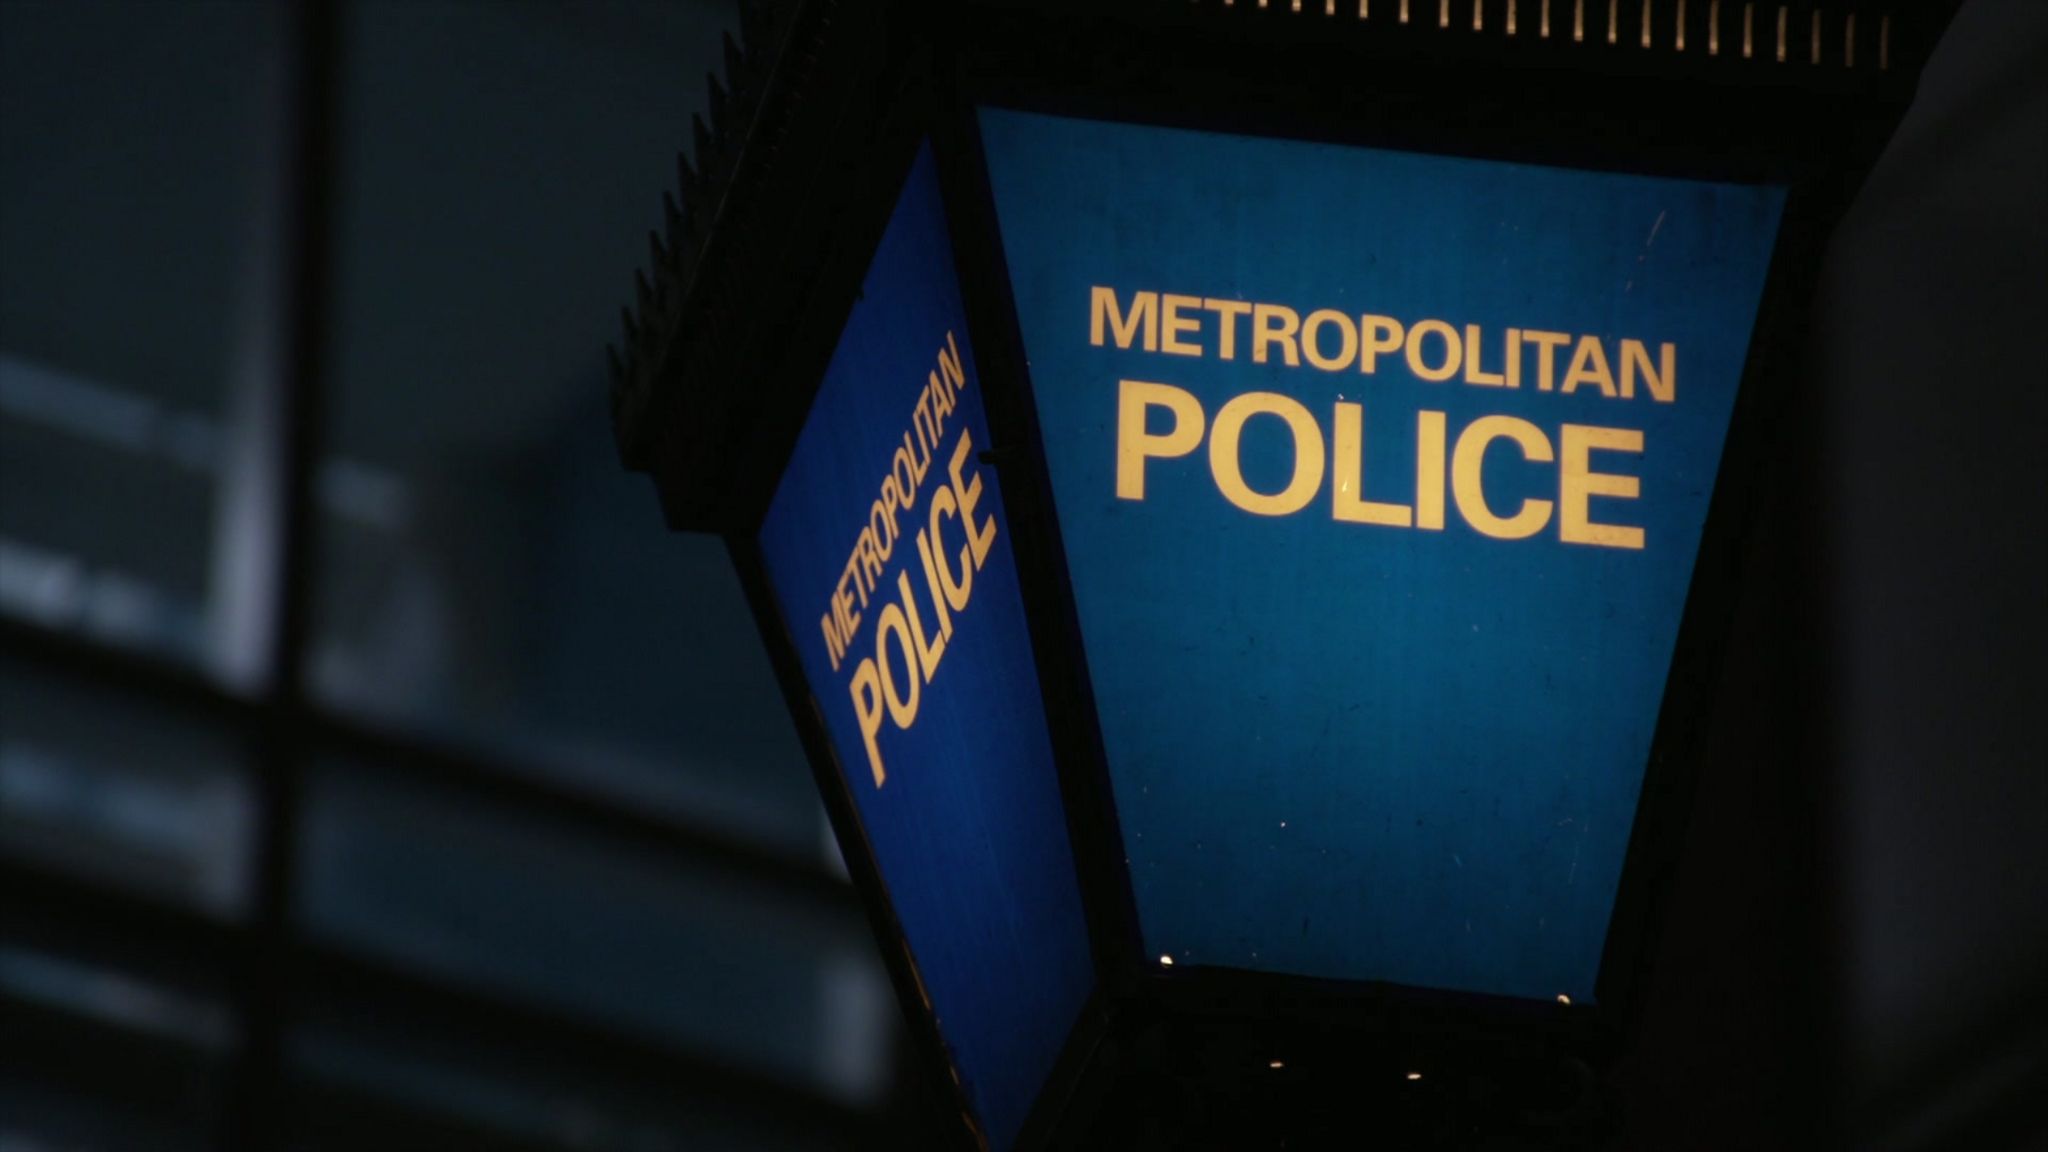 Light up Metropolitan Police lantern